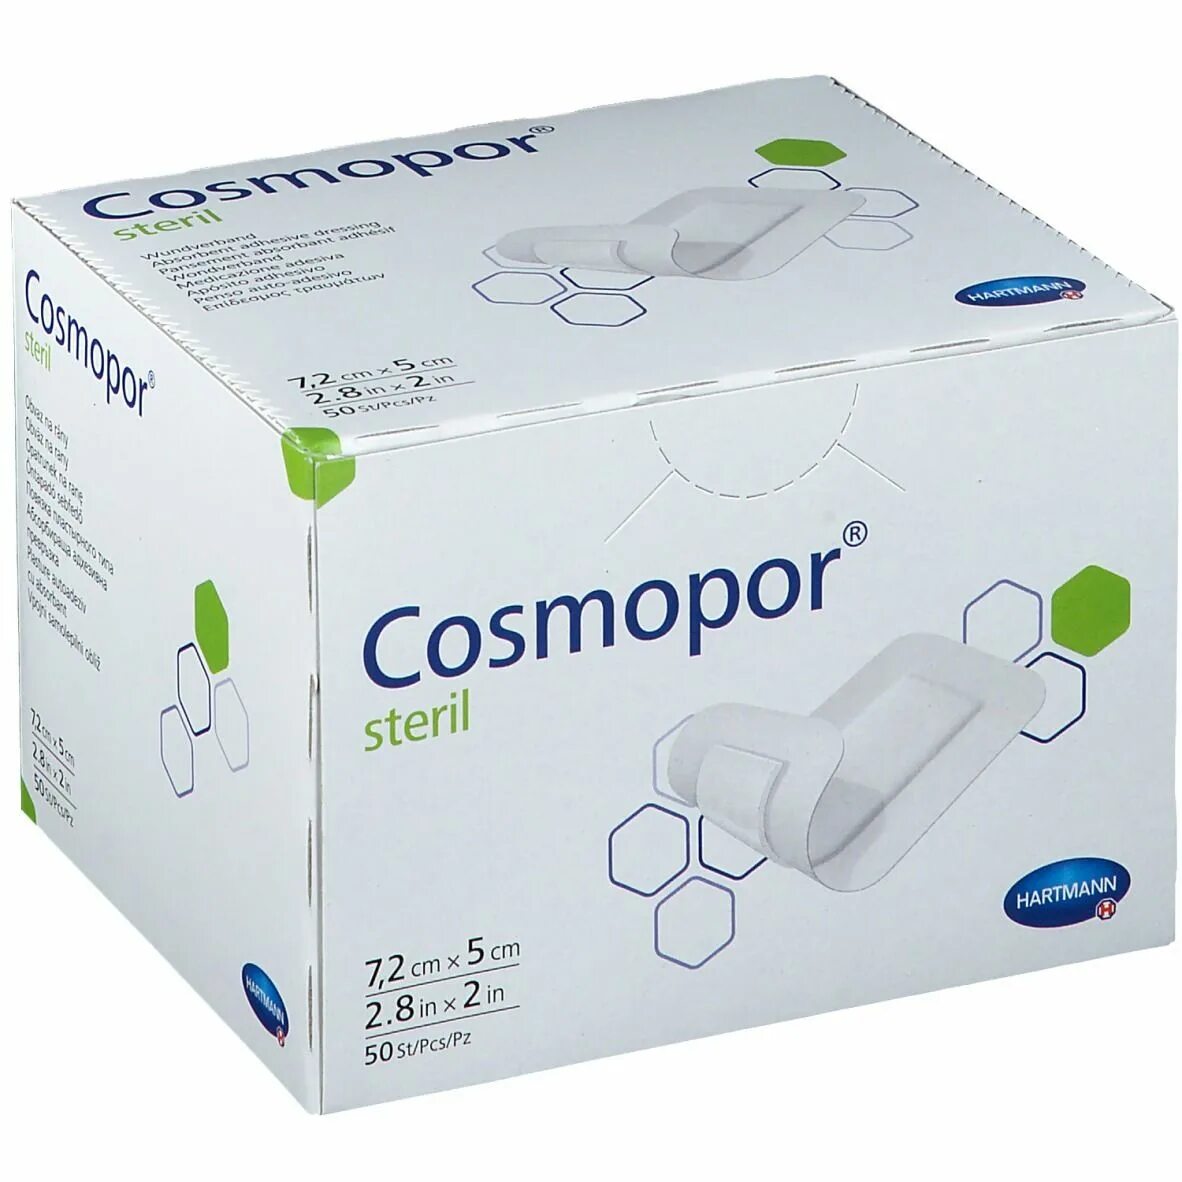 Cosmopor e. Cosmopor i.v. transparent 6x5cm. Cosmopor i.v. transparent 6x5cm St p100. Emplastru 2.5cm x 7.2cm n16 Express Care. Emplastru citoplast Aqua 2.6CMX6.5cm n20 (Medica).